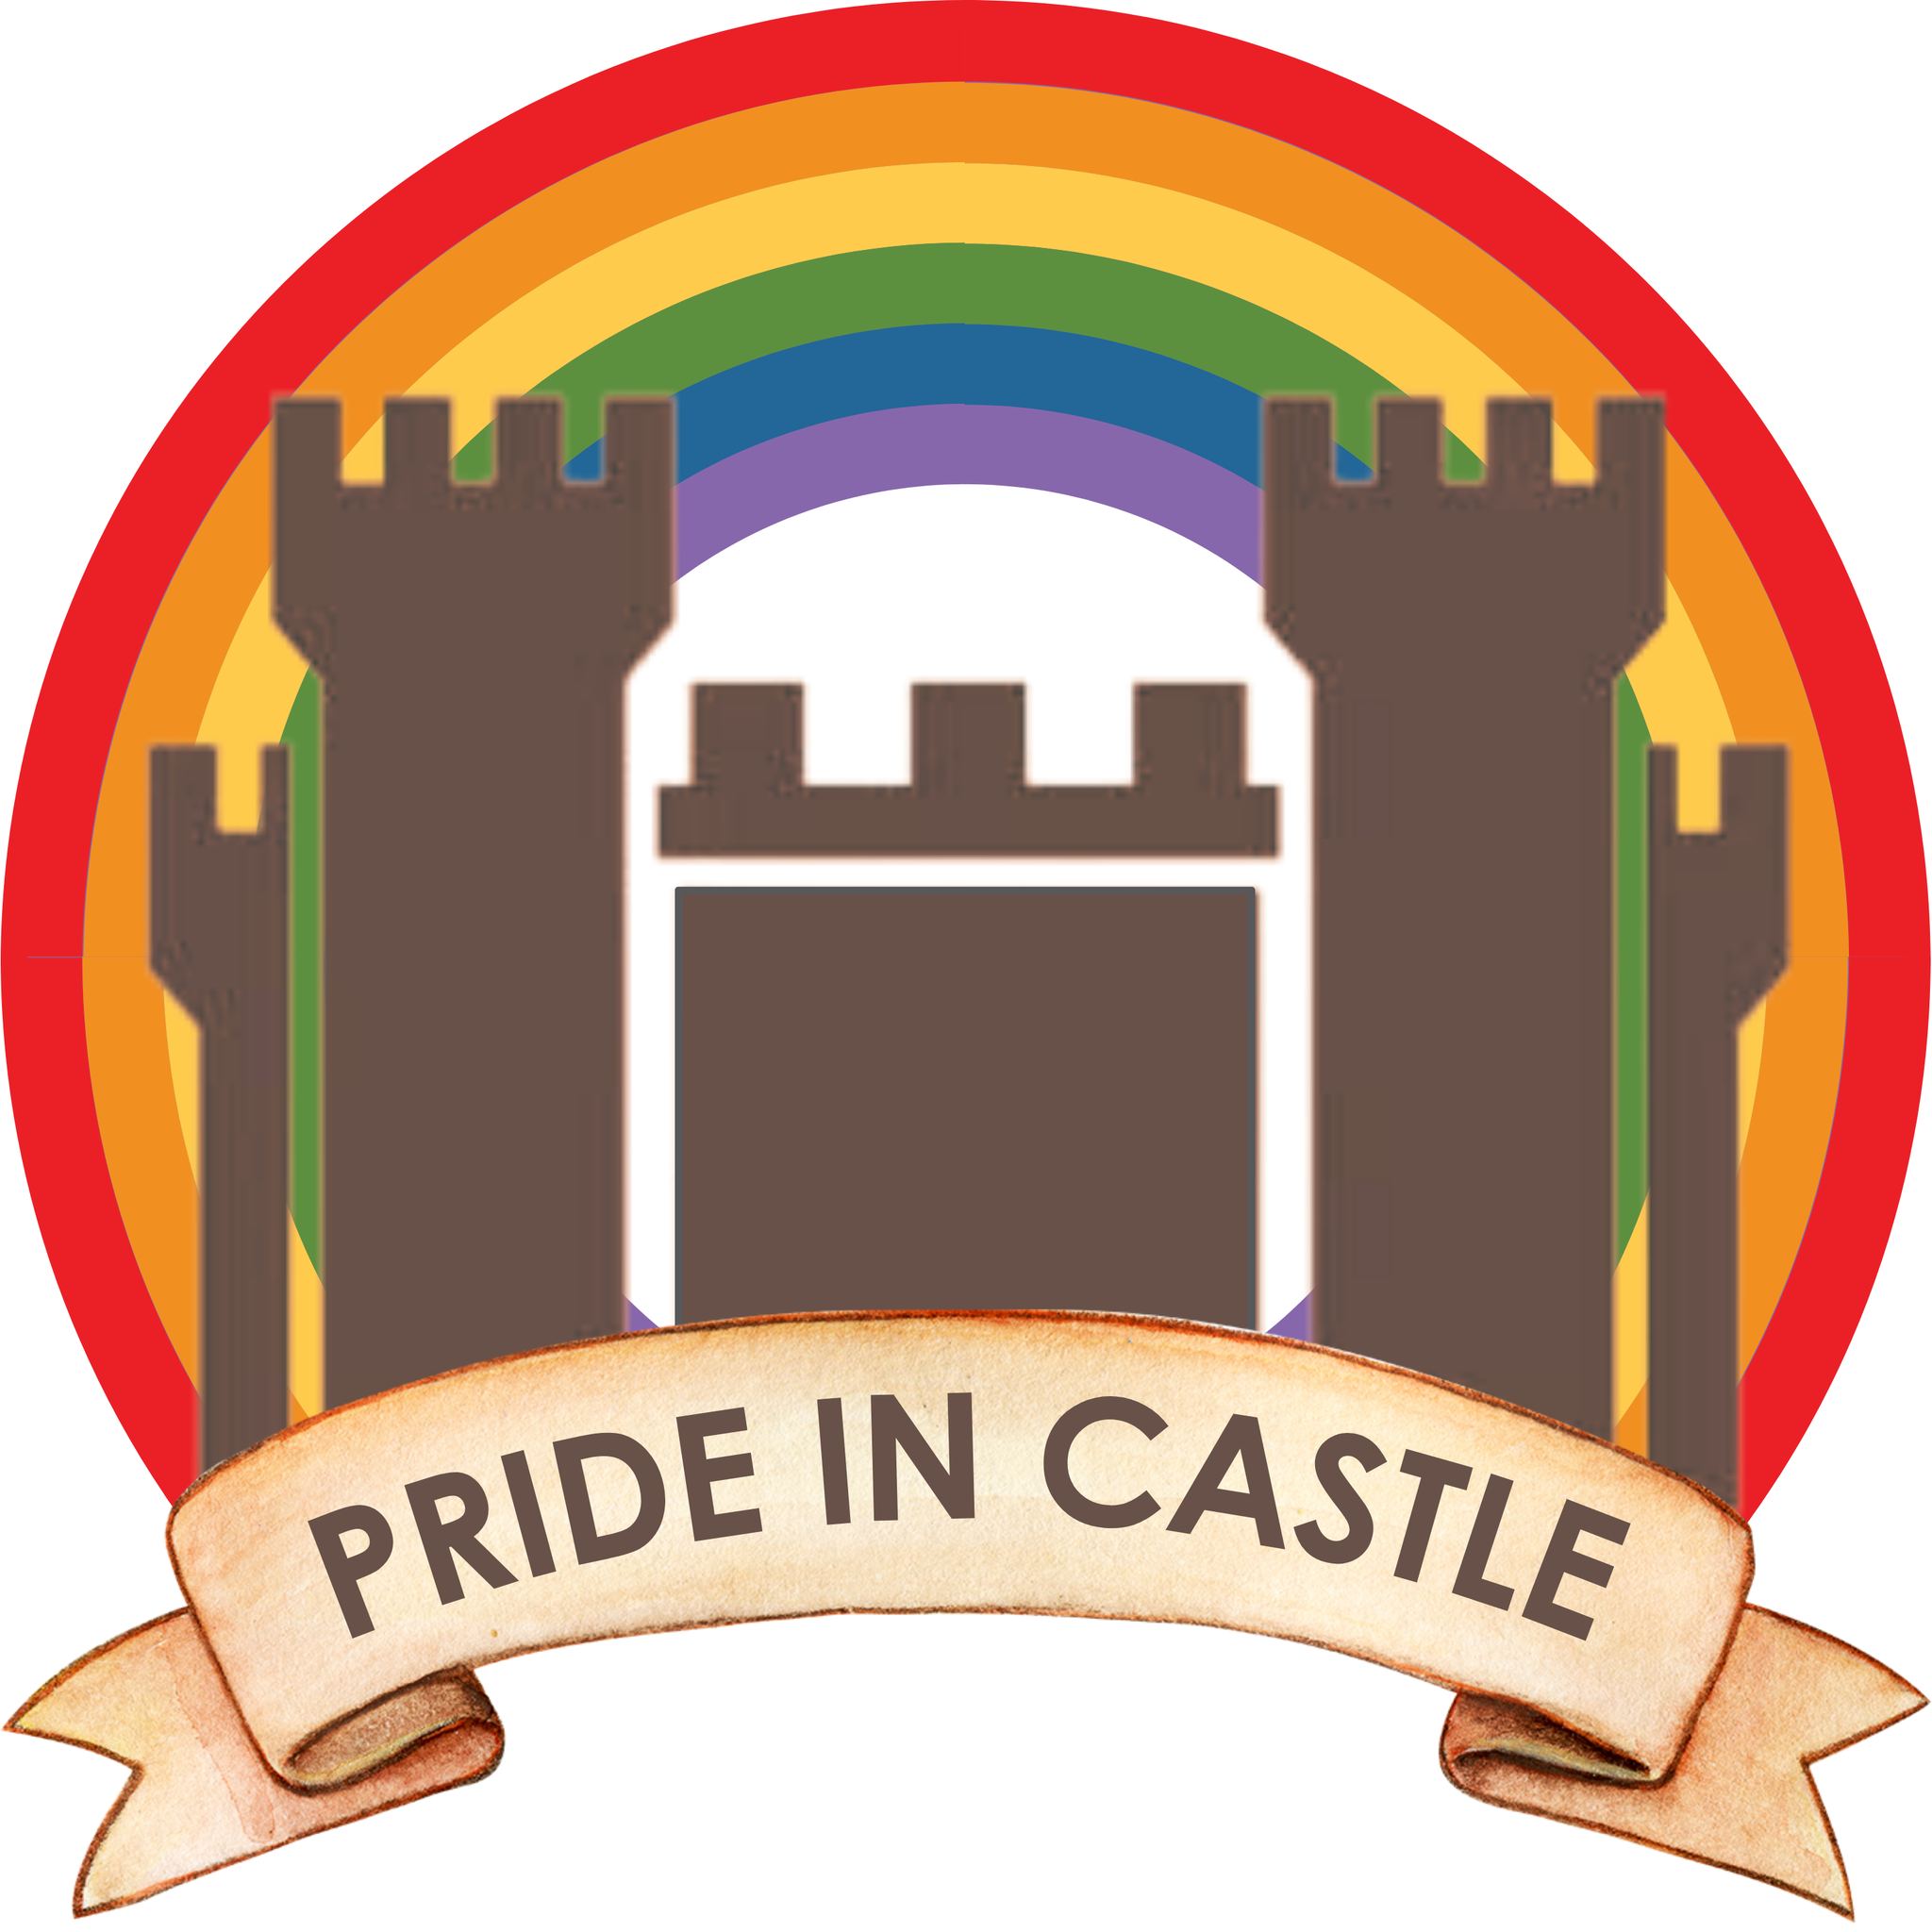 Pride in castle logo